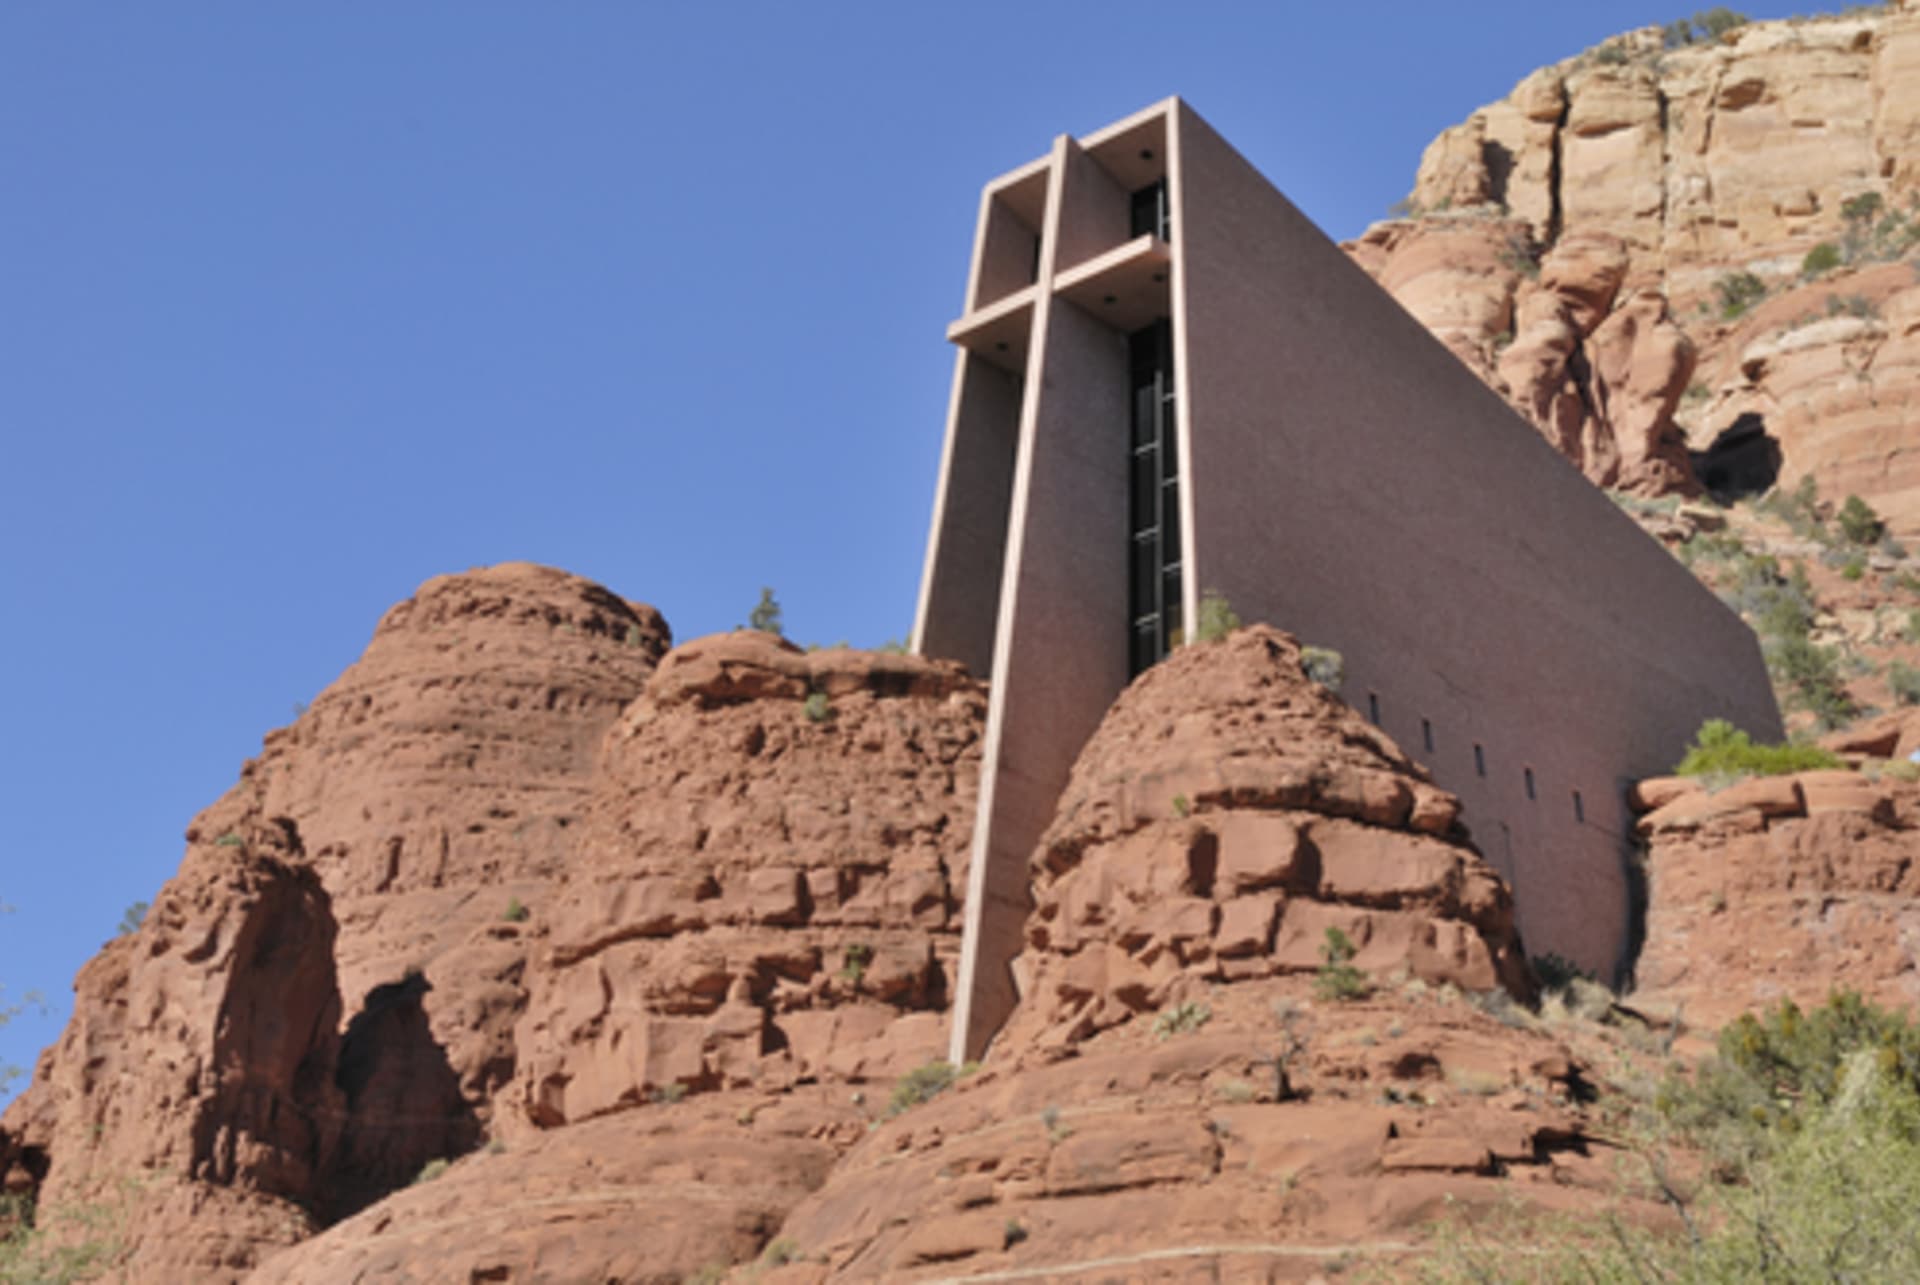 Moderní kostel díky hranatému tvaru a barevným oknům nádherně vyniká proti pískovcovým skalám - Arizona, USA